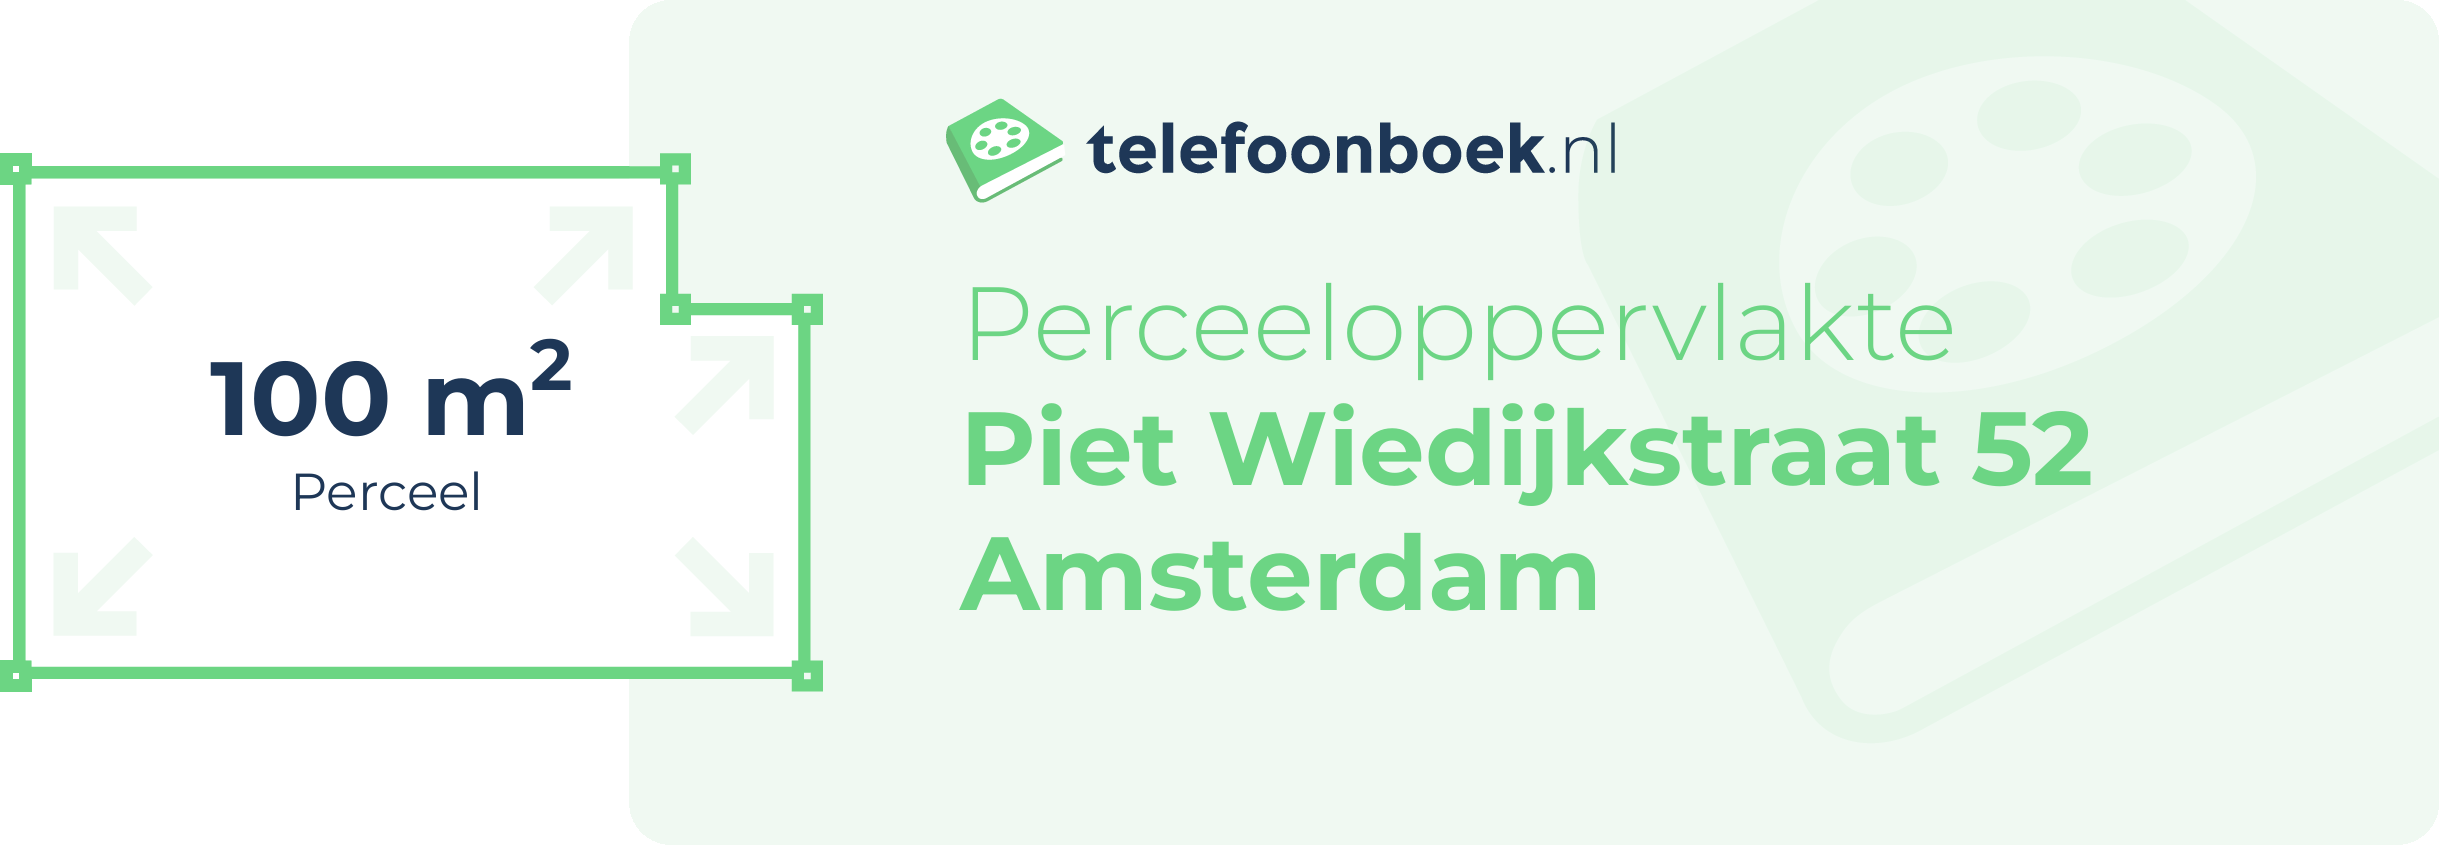 Perceeloppervlakte Piet Wiedijkstraat 52 Amsterdam